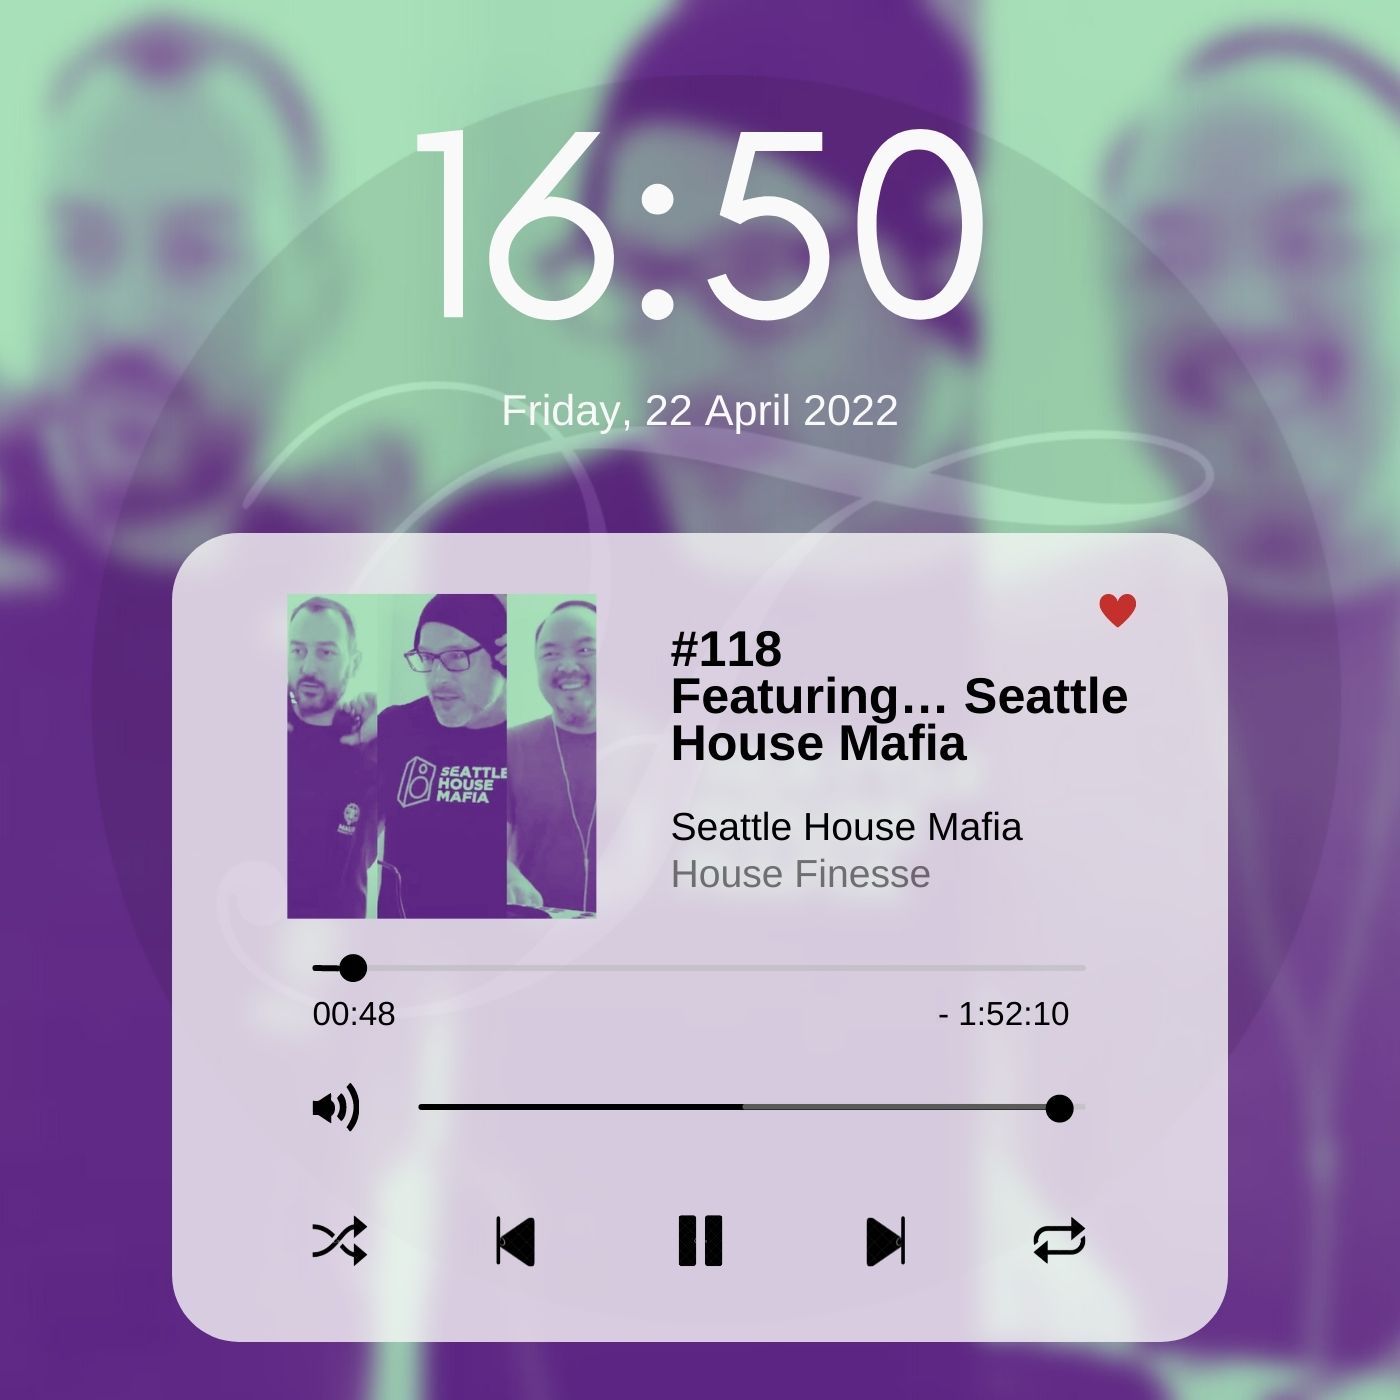 Featuring… Seattle House Mafia